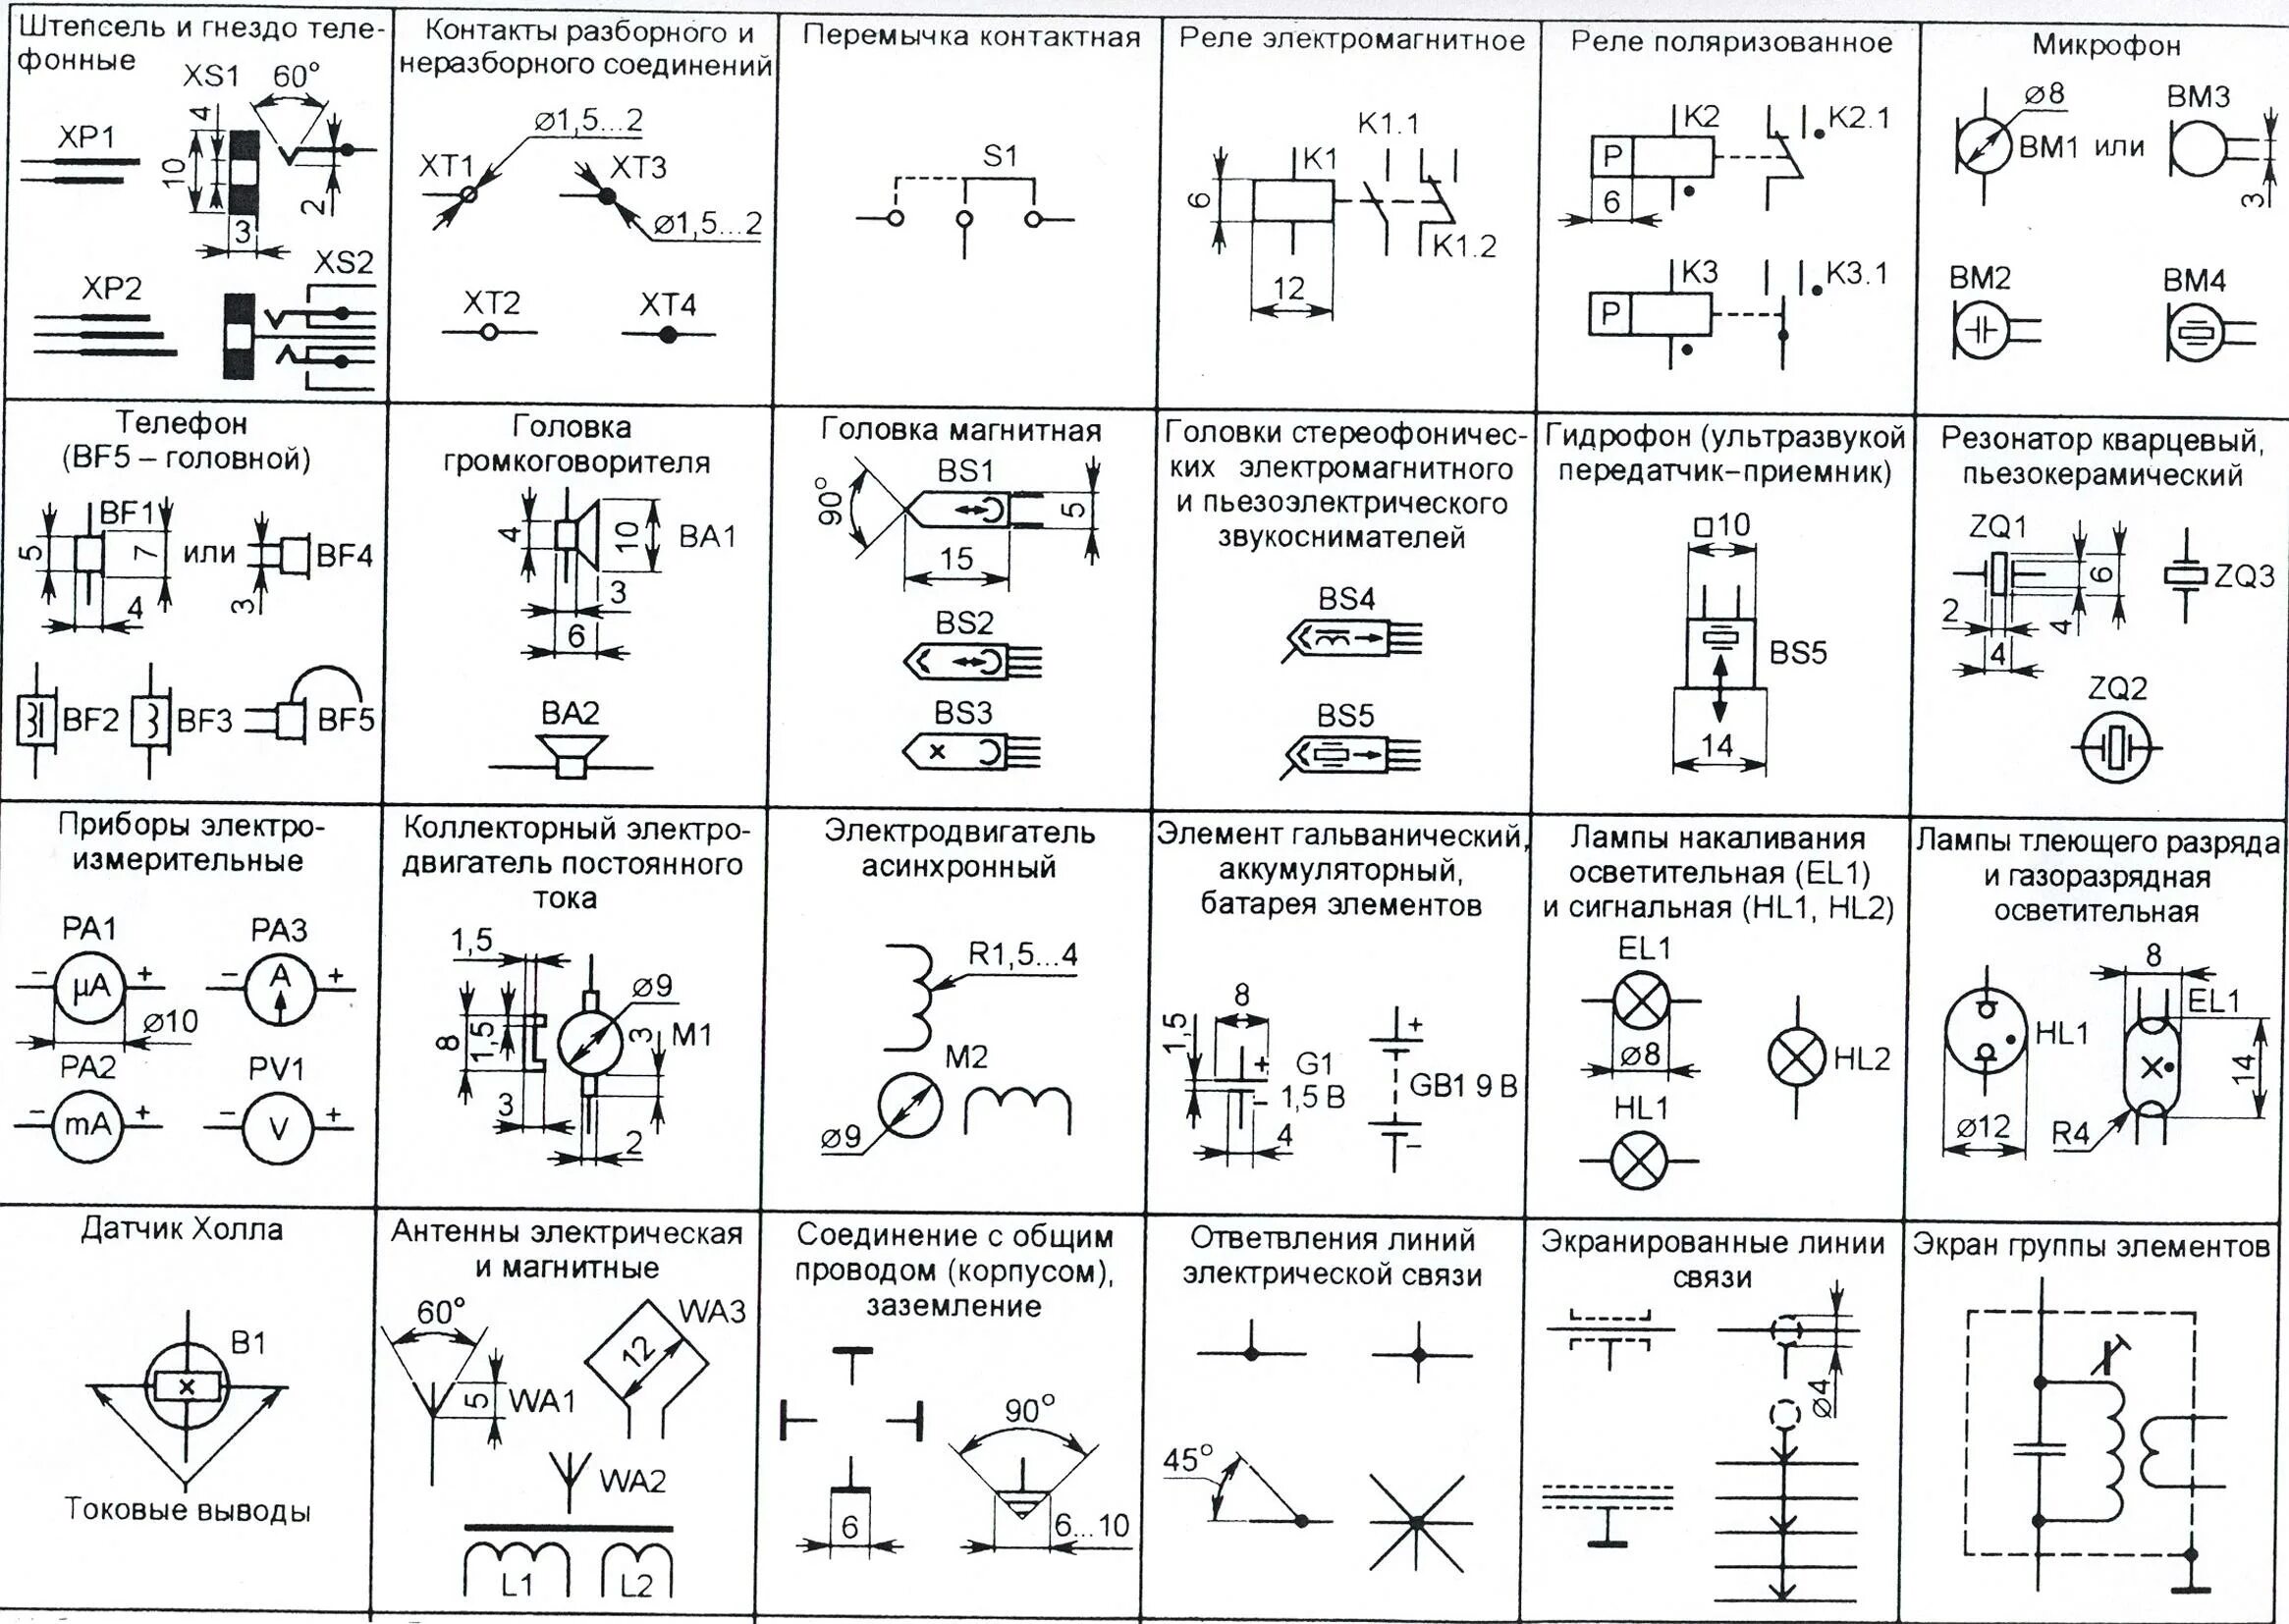 Схемы э д с. ГОСТОВСКИЕ обозначения элементов электрических схем. Обозначение клеммы на схеме электрической принципиальной. Условные графические обозначения разъемов в принципиальных схемах. Обозначение элементов на схеме подстанции.